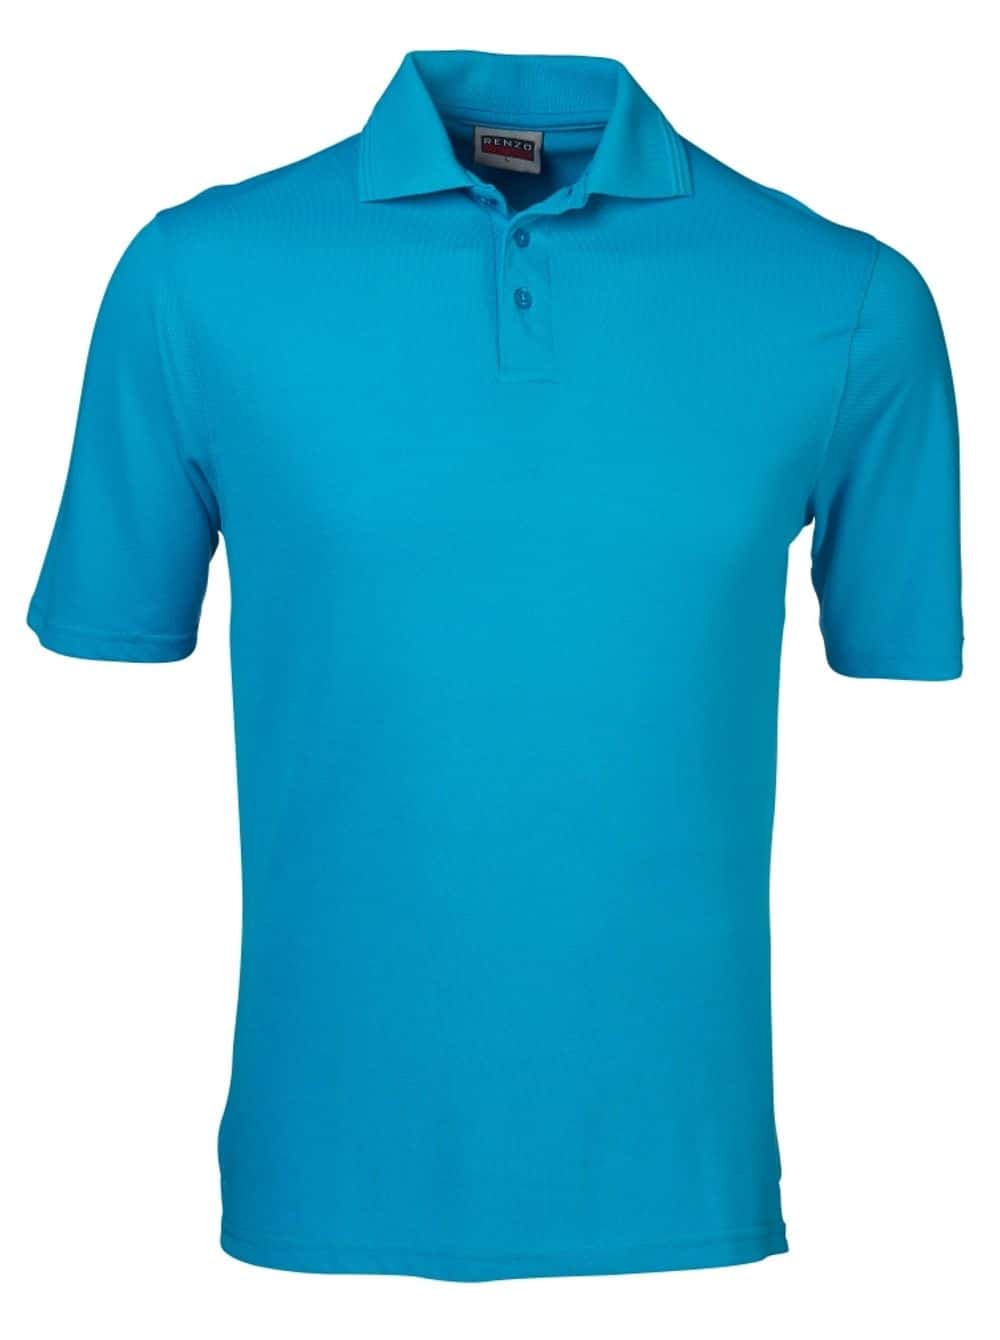 180G Pique Golf Shirt Golf Shirts